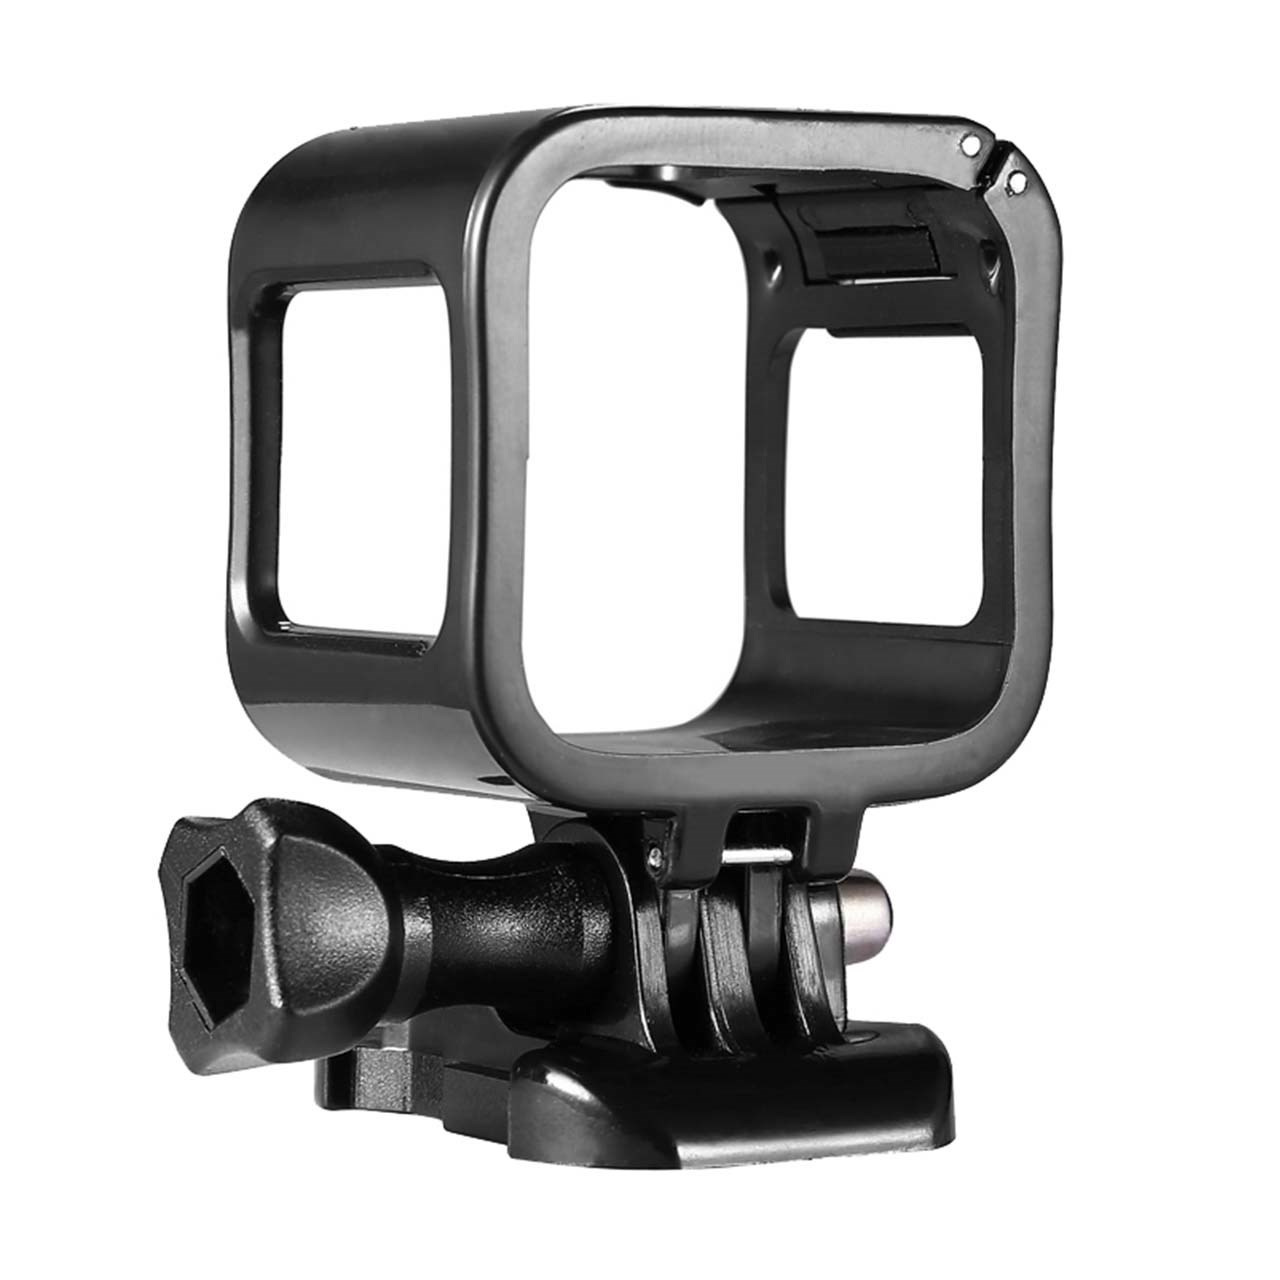 قاب دوربین و پایه اتصال  پلوز مدل The Frame مناسب برای دوربین گوپرو هیرو سشن 4 و 5